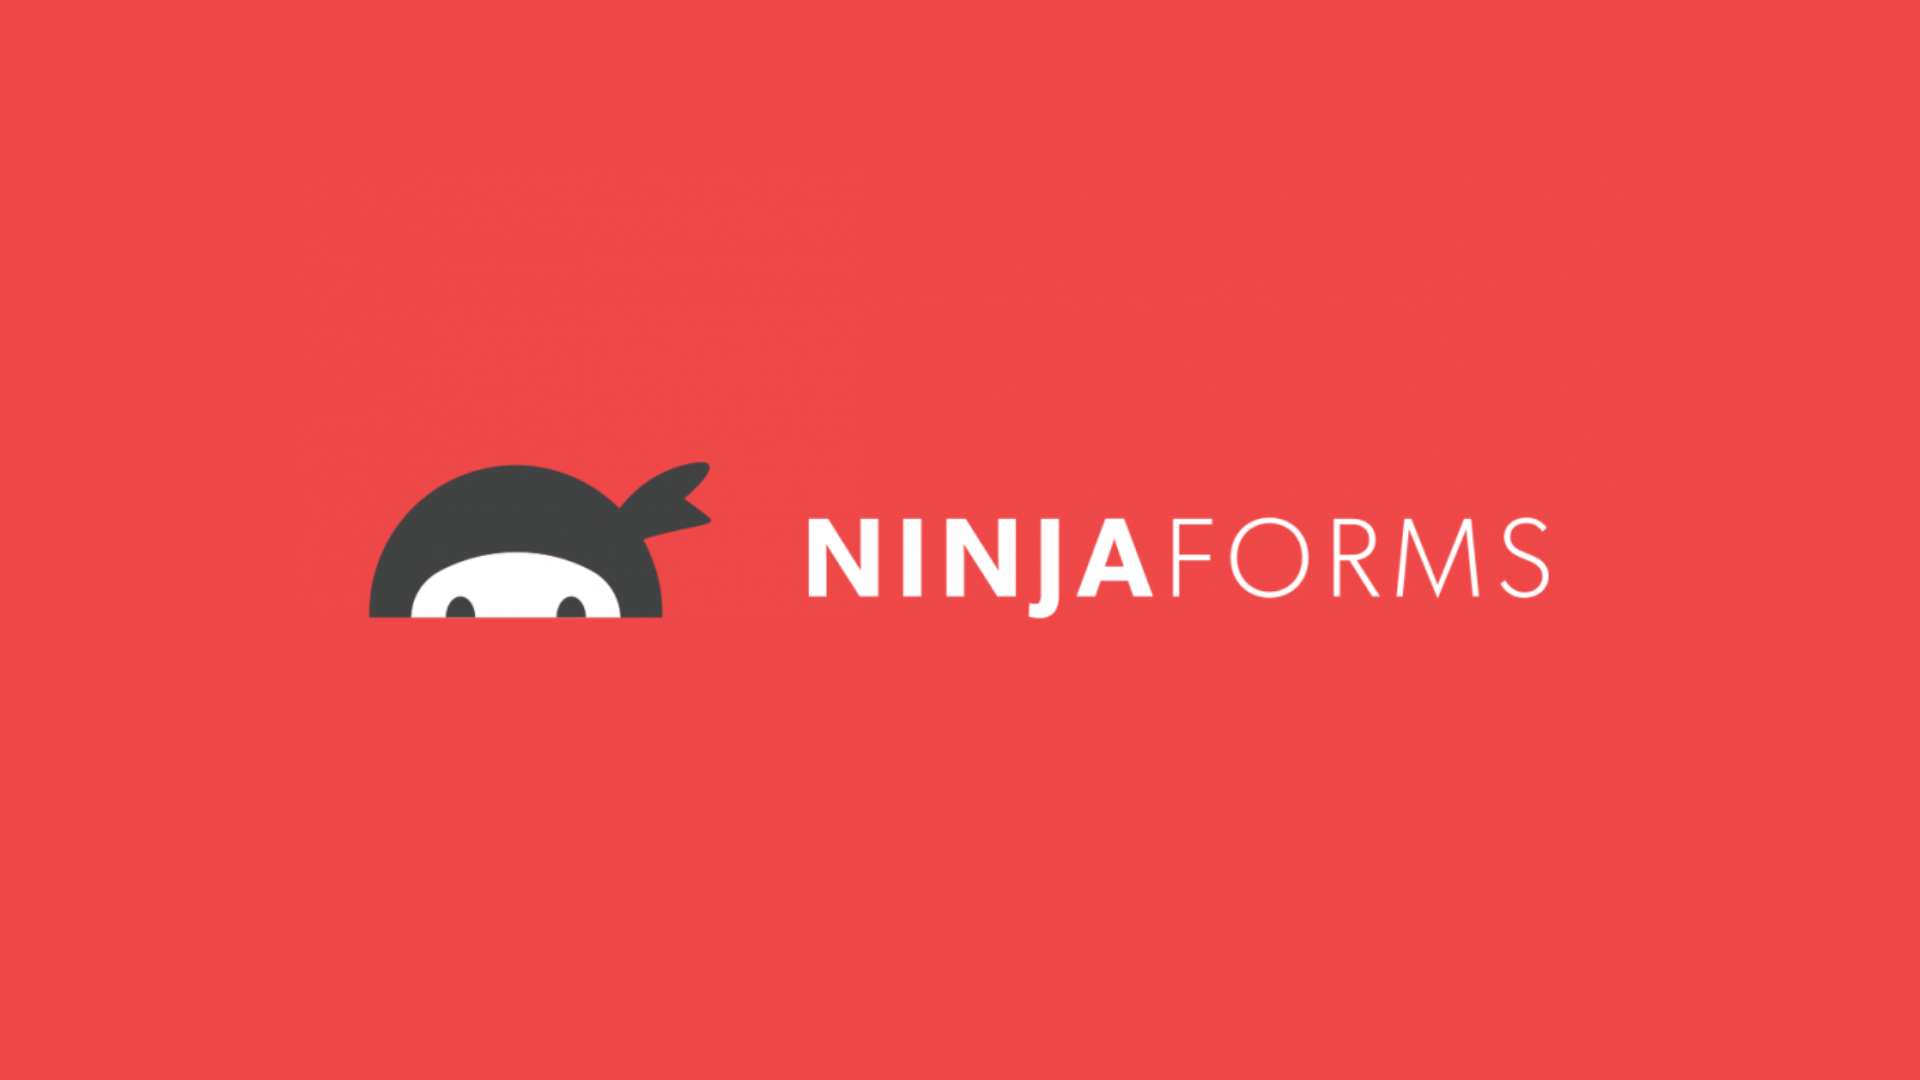 Ninja_forms.png